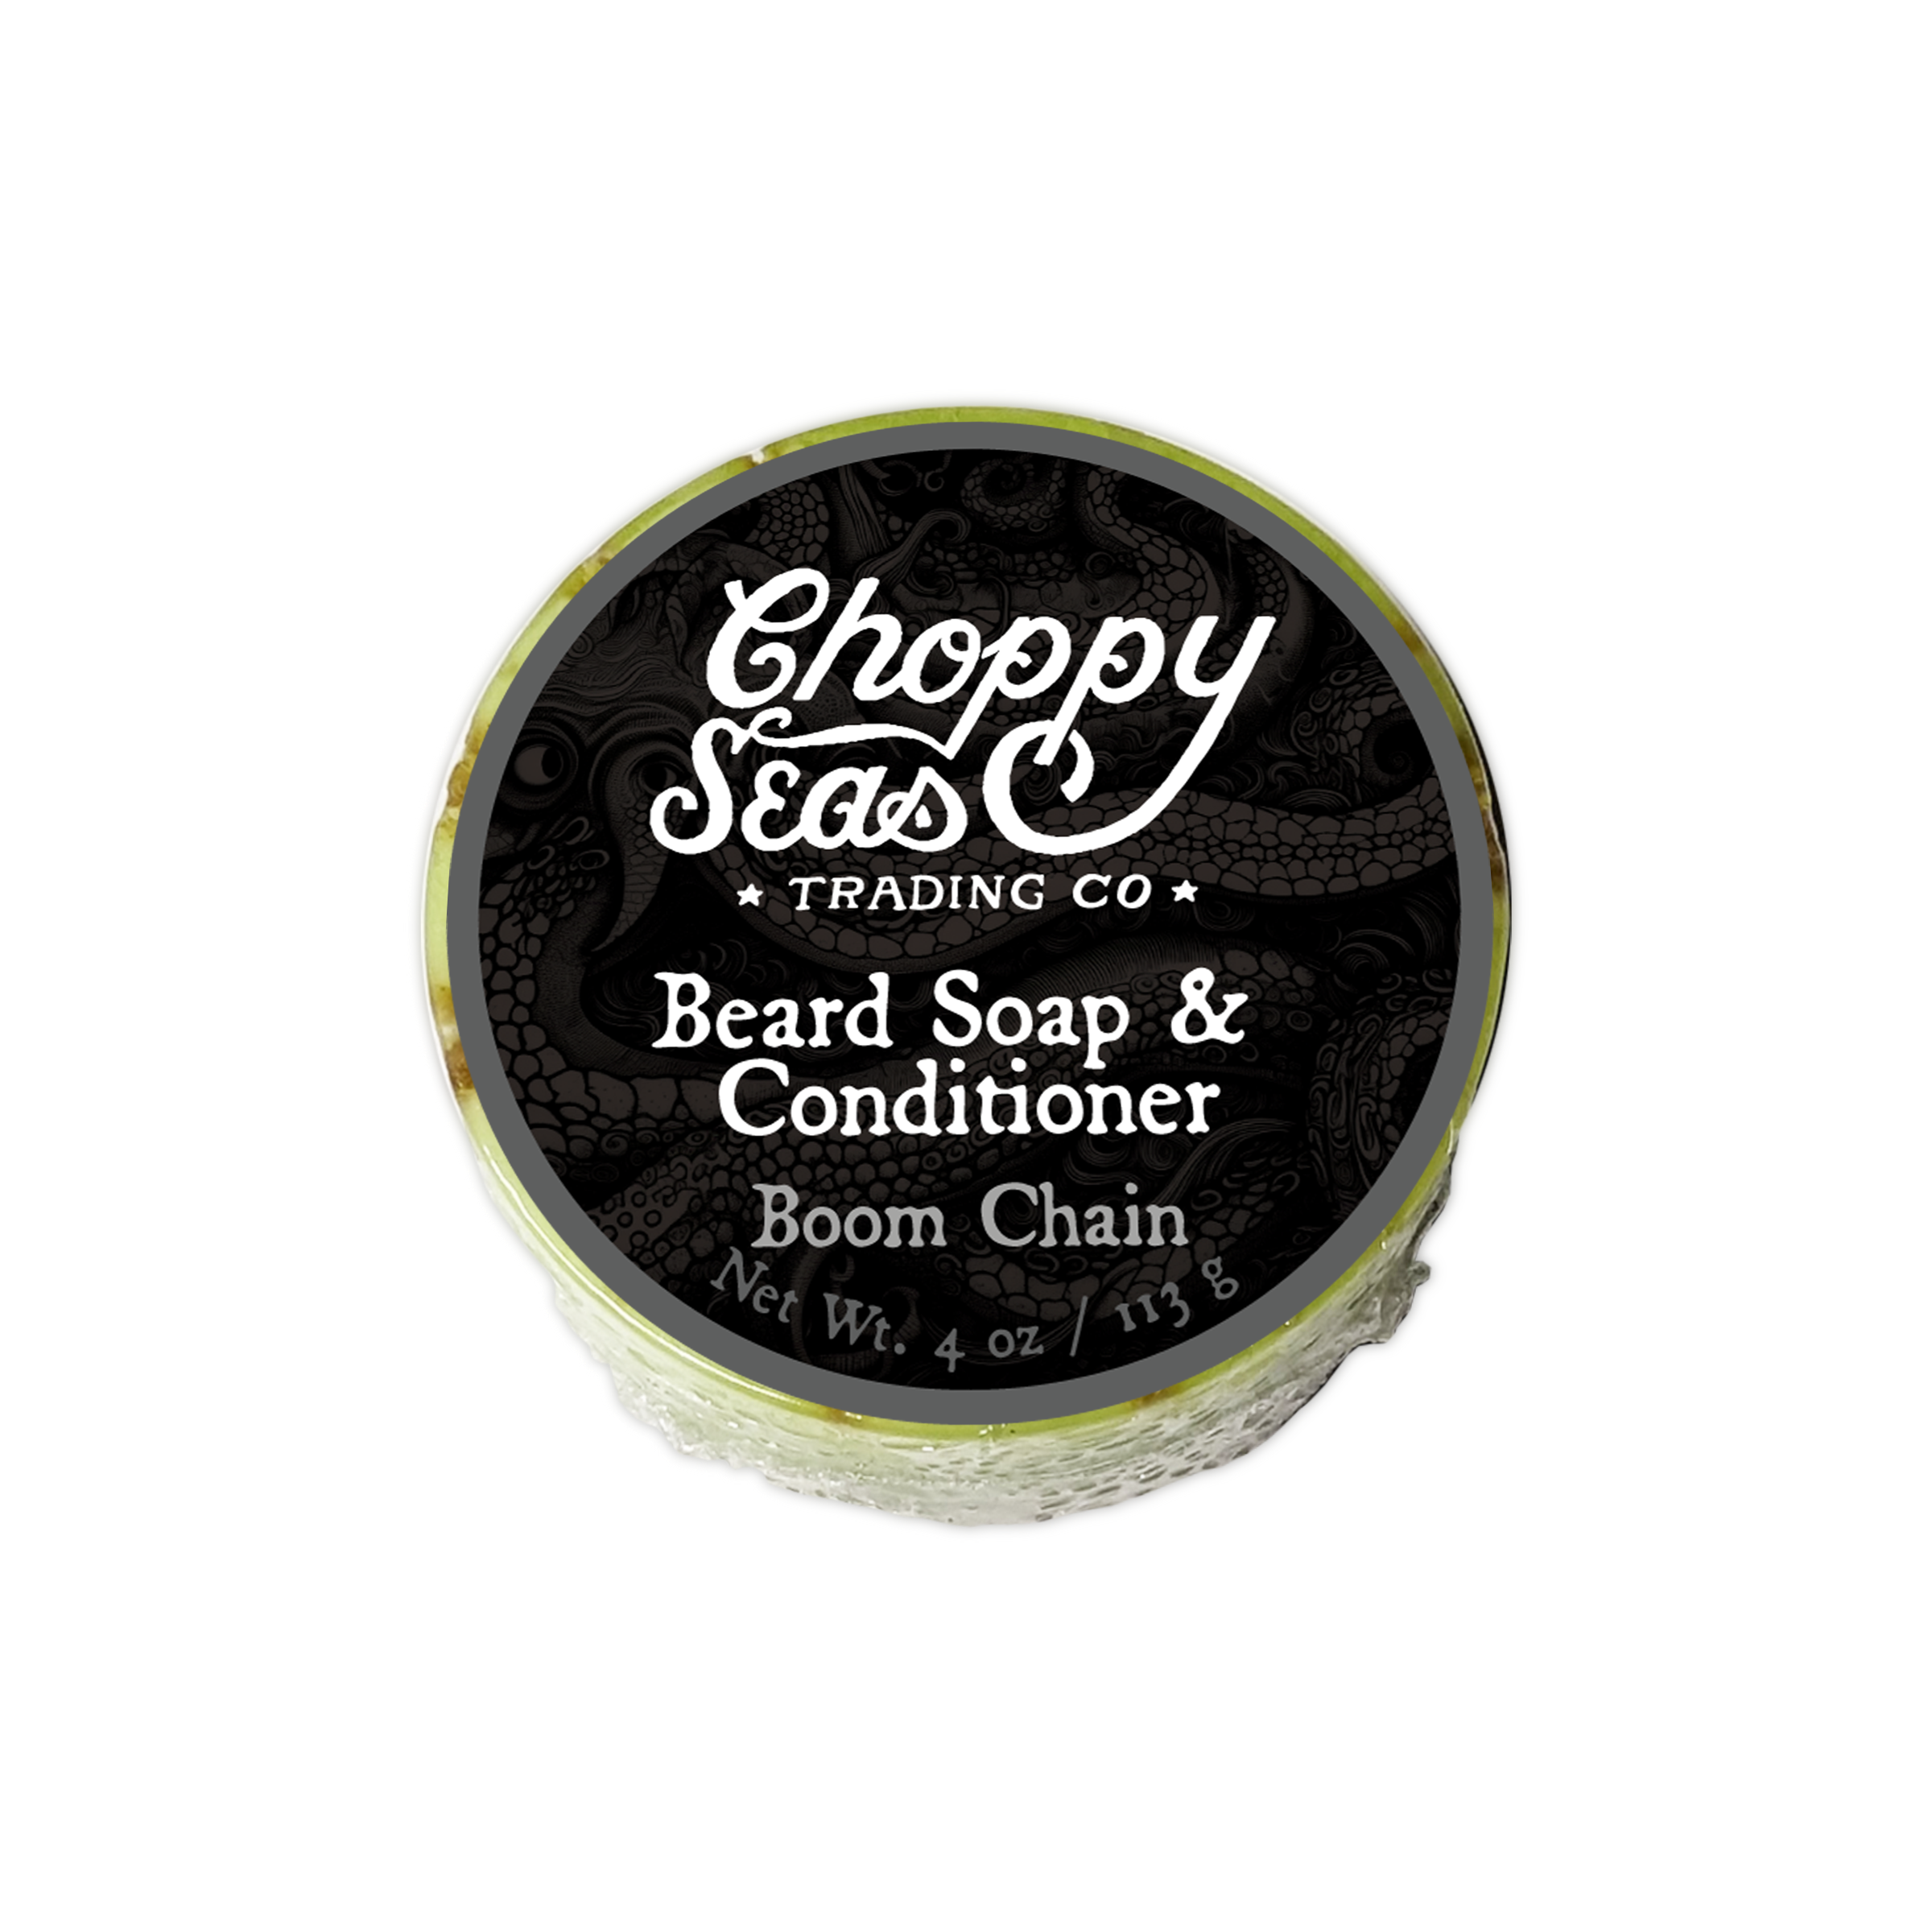 Boom Chain Beard Soap & Conditioner